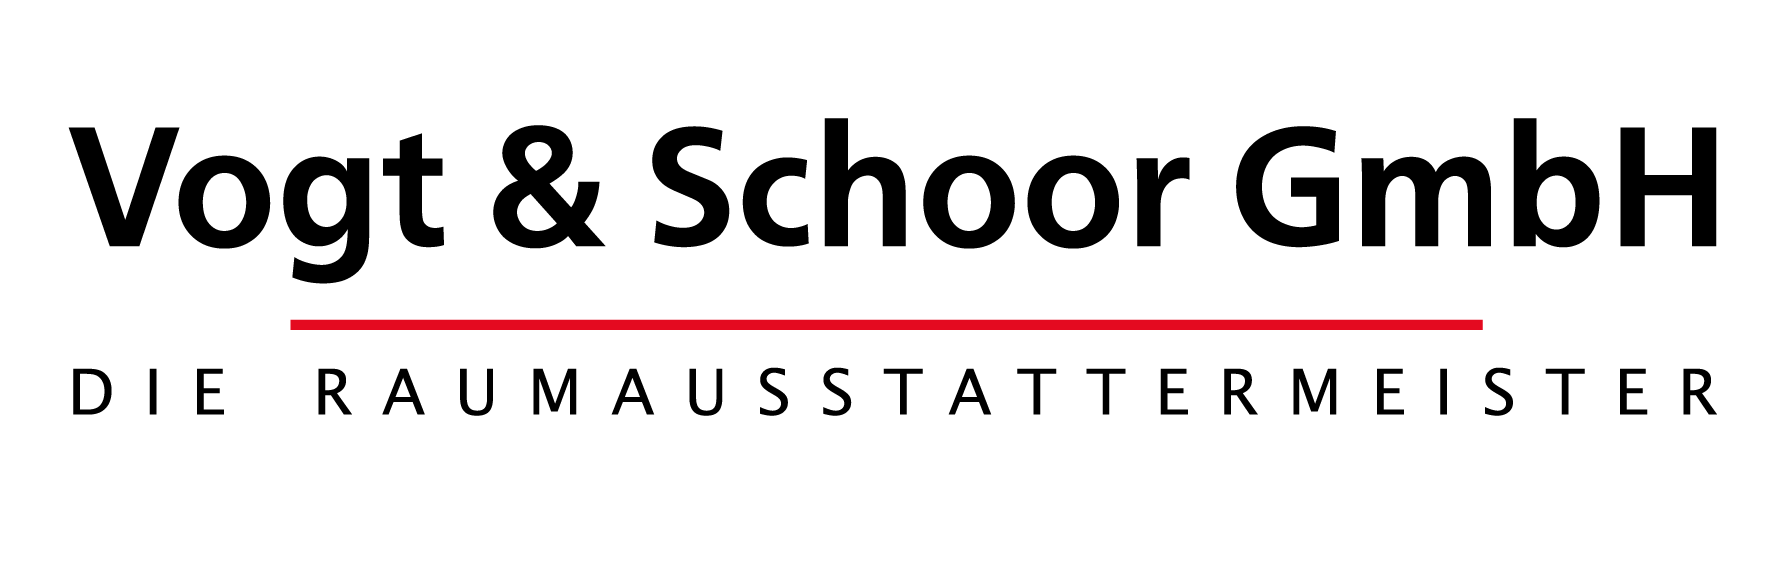 Vogt & Schoor Raumausstattermeister